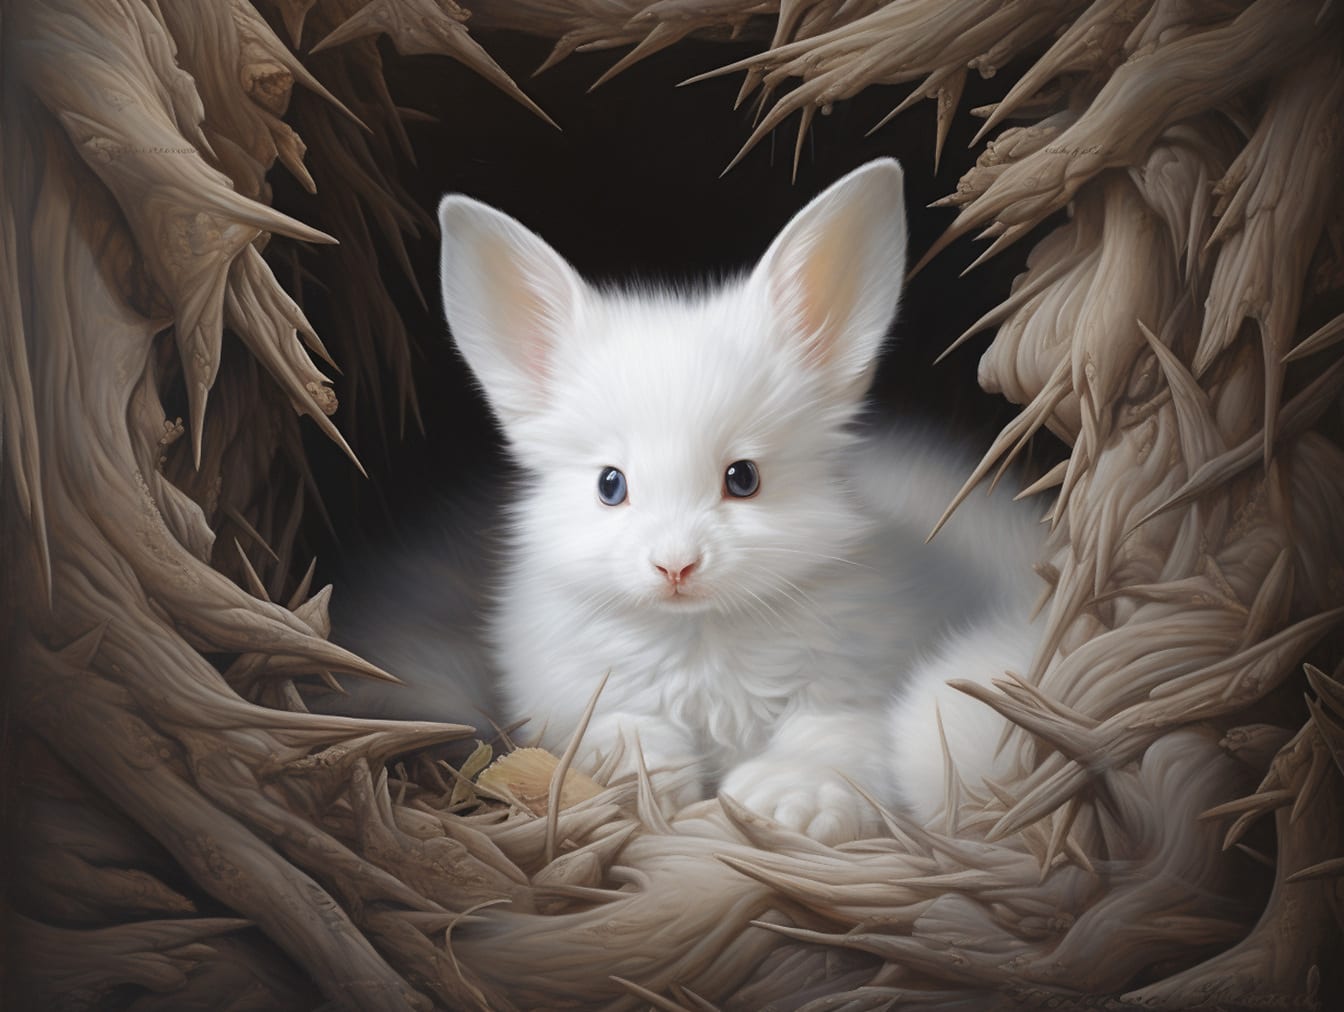 Fantasy væsen hvid kanin-klitten med store ører